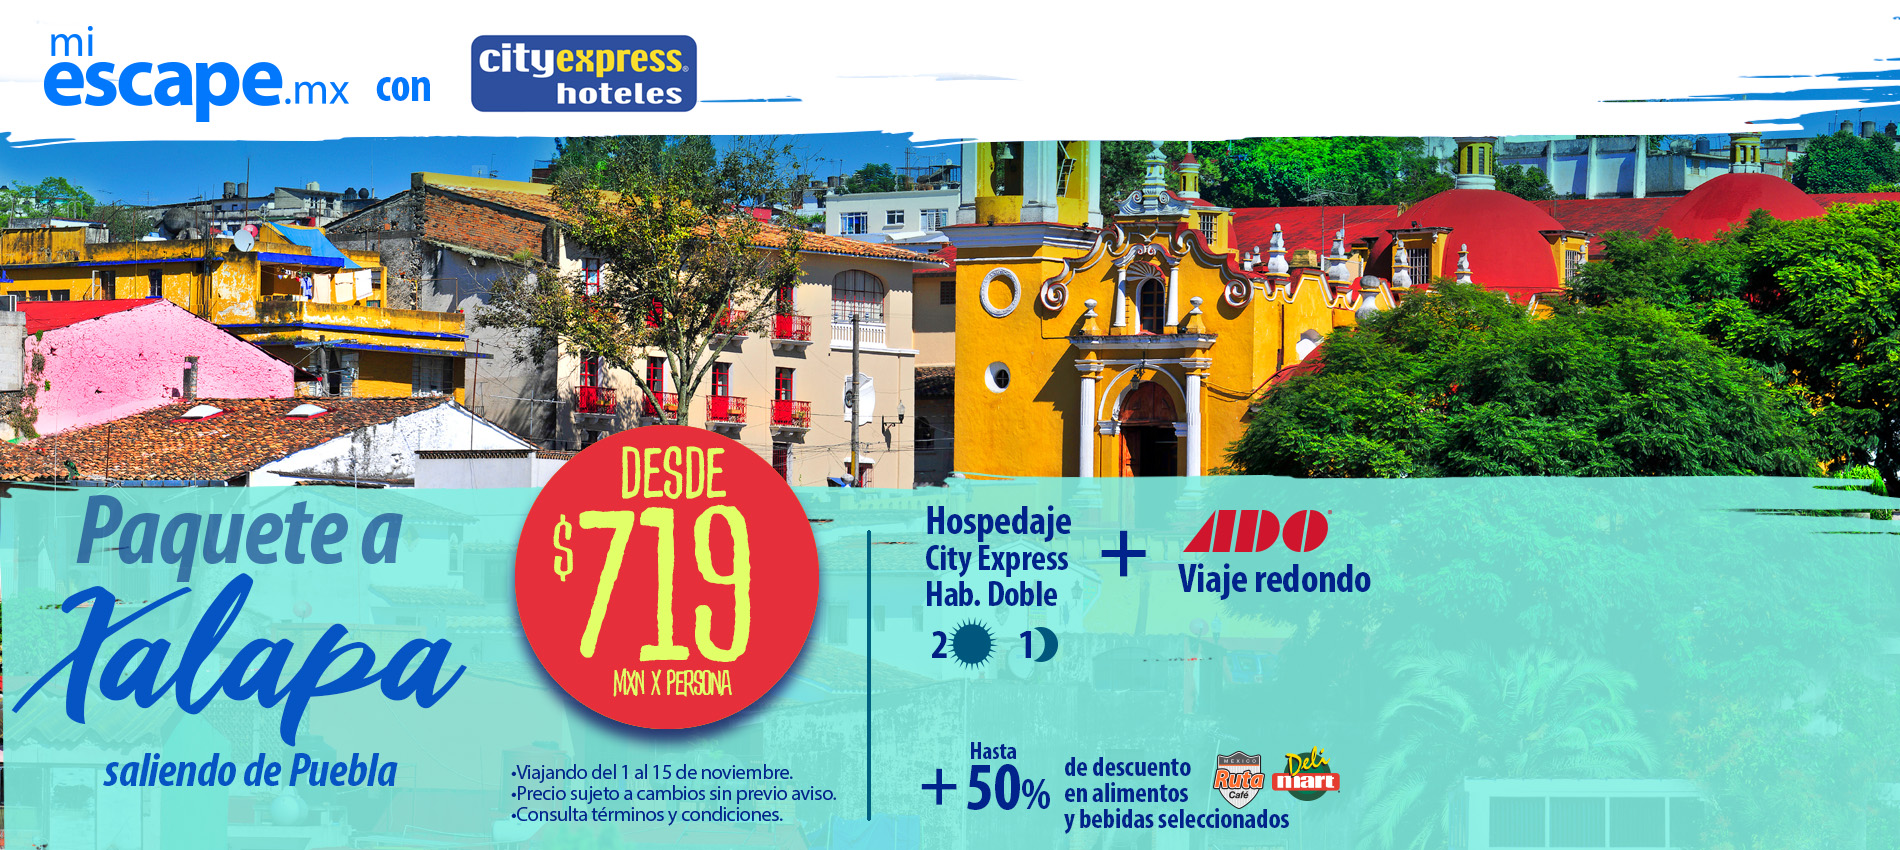 Paquete redondo (Autobús + Hotel) Puebla - Xalapa | Promoción Mi Escape con City Express